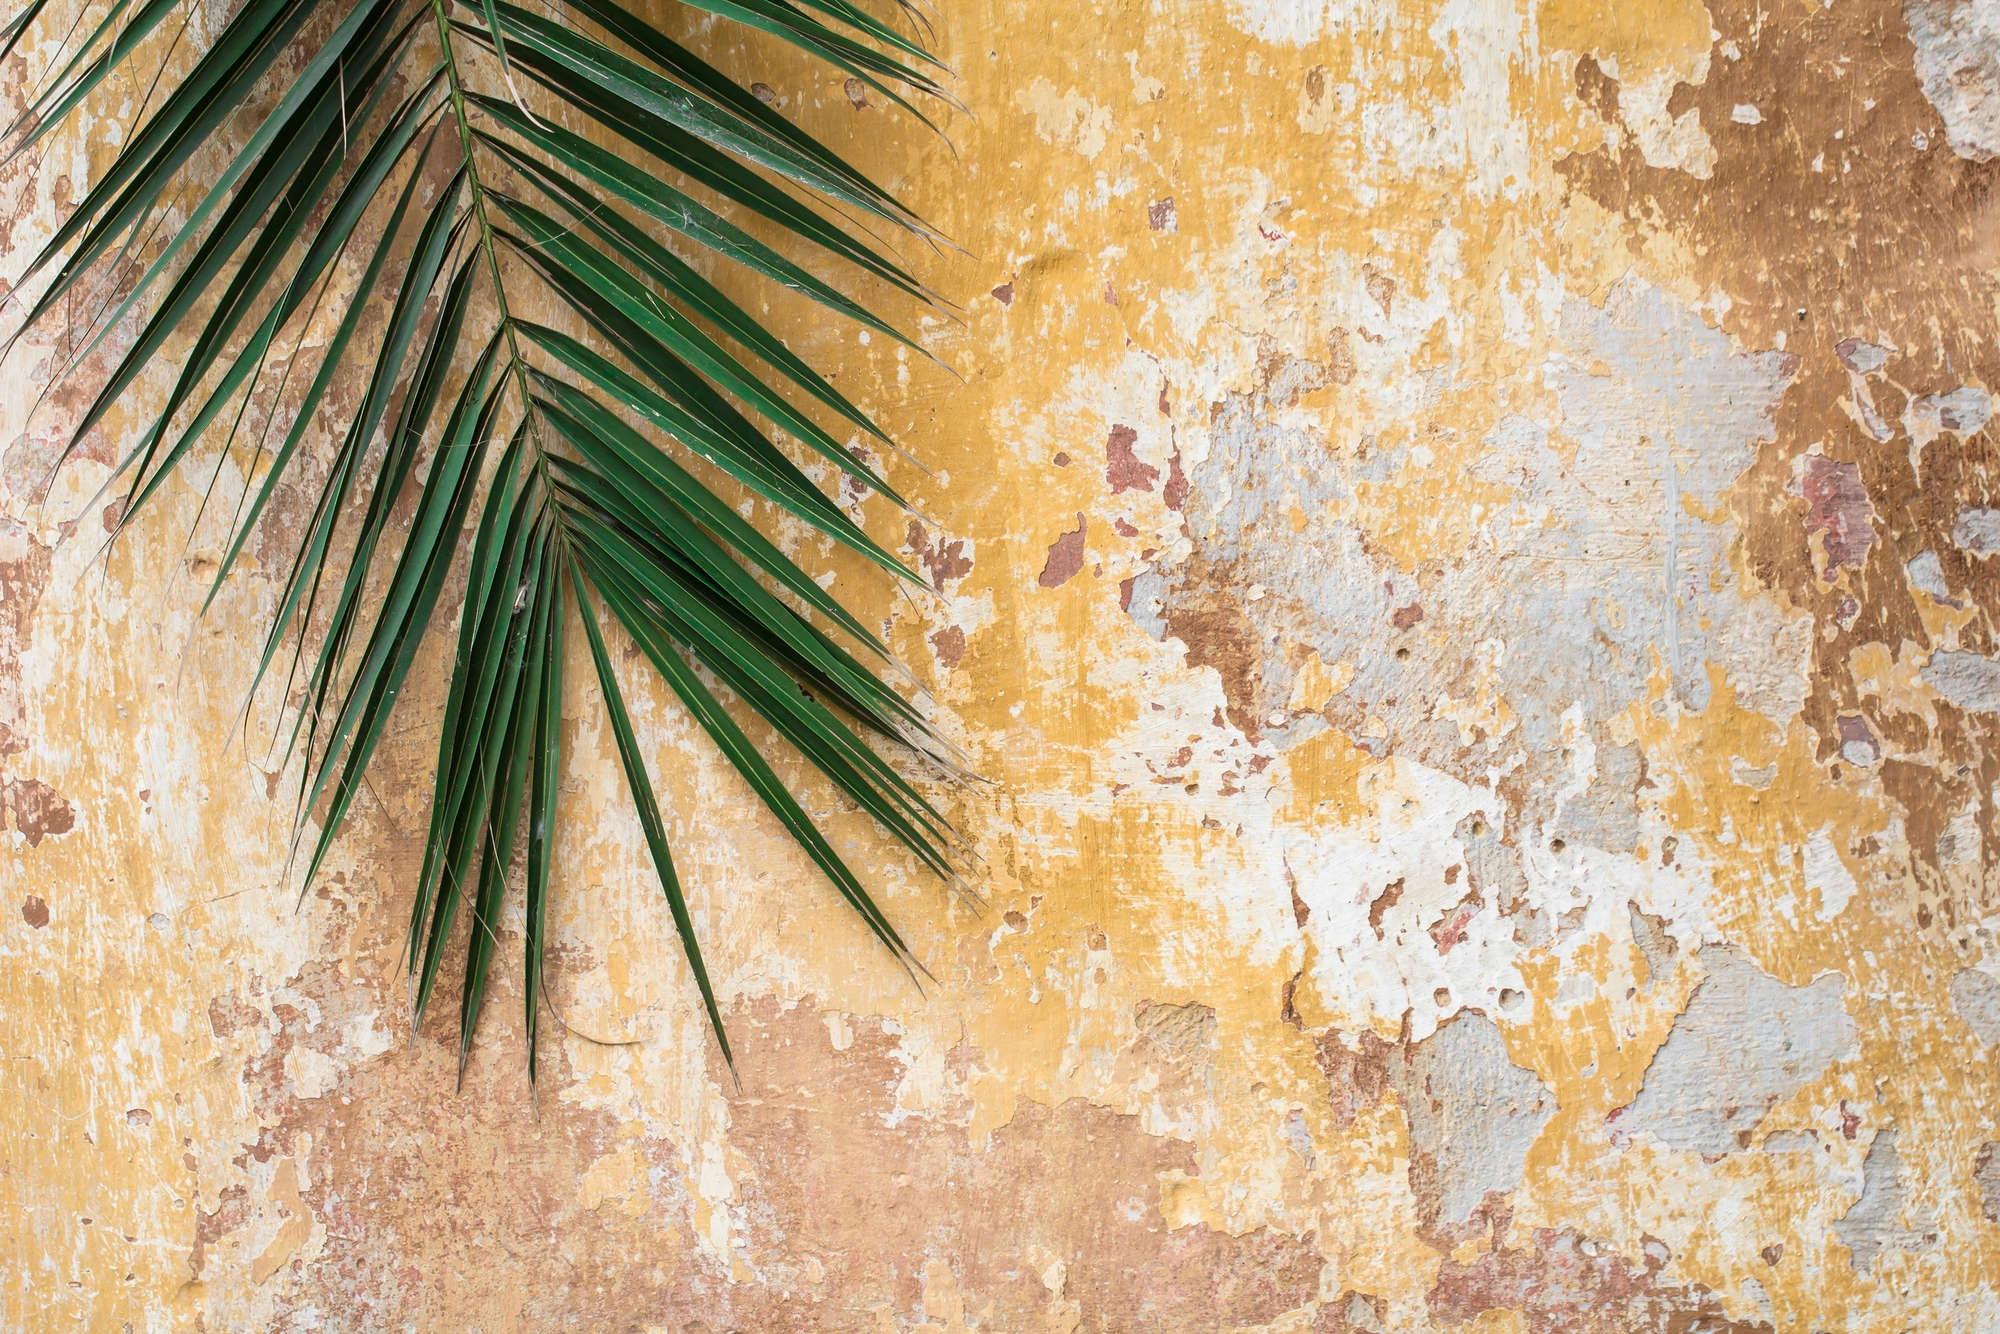             Natur Fototapete Palmenblatt vor Steinmauer auf Strukturvlies
        